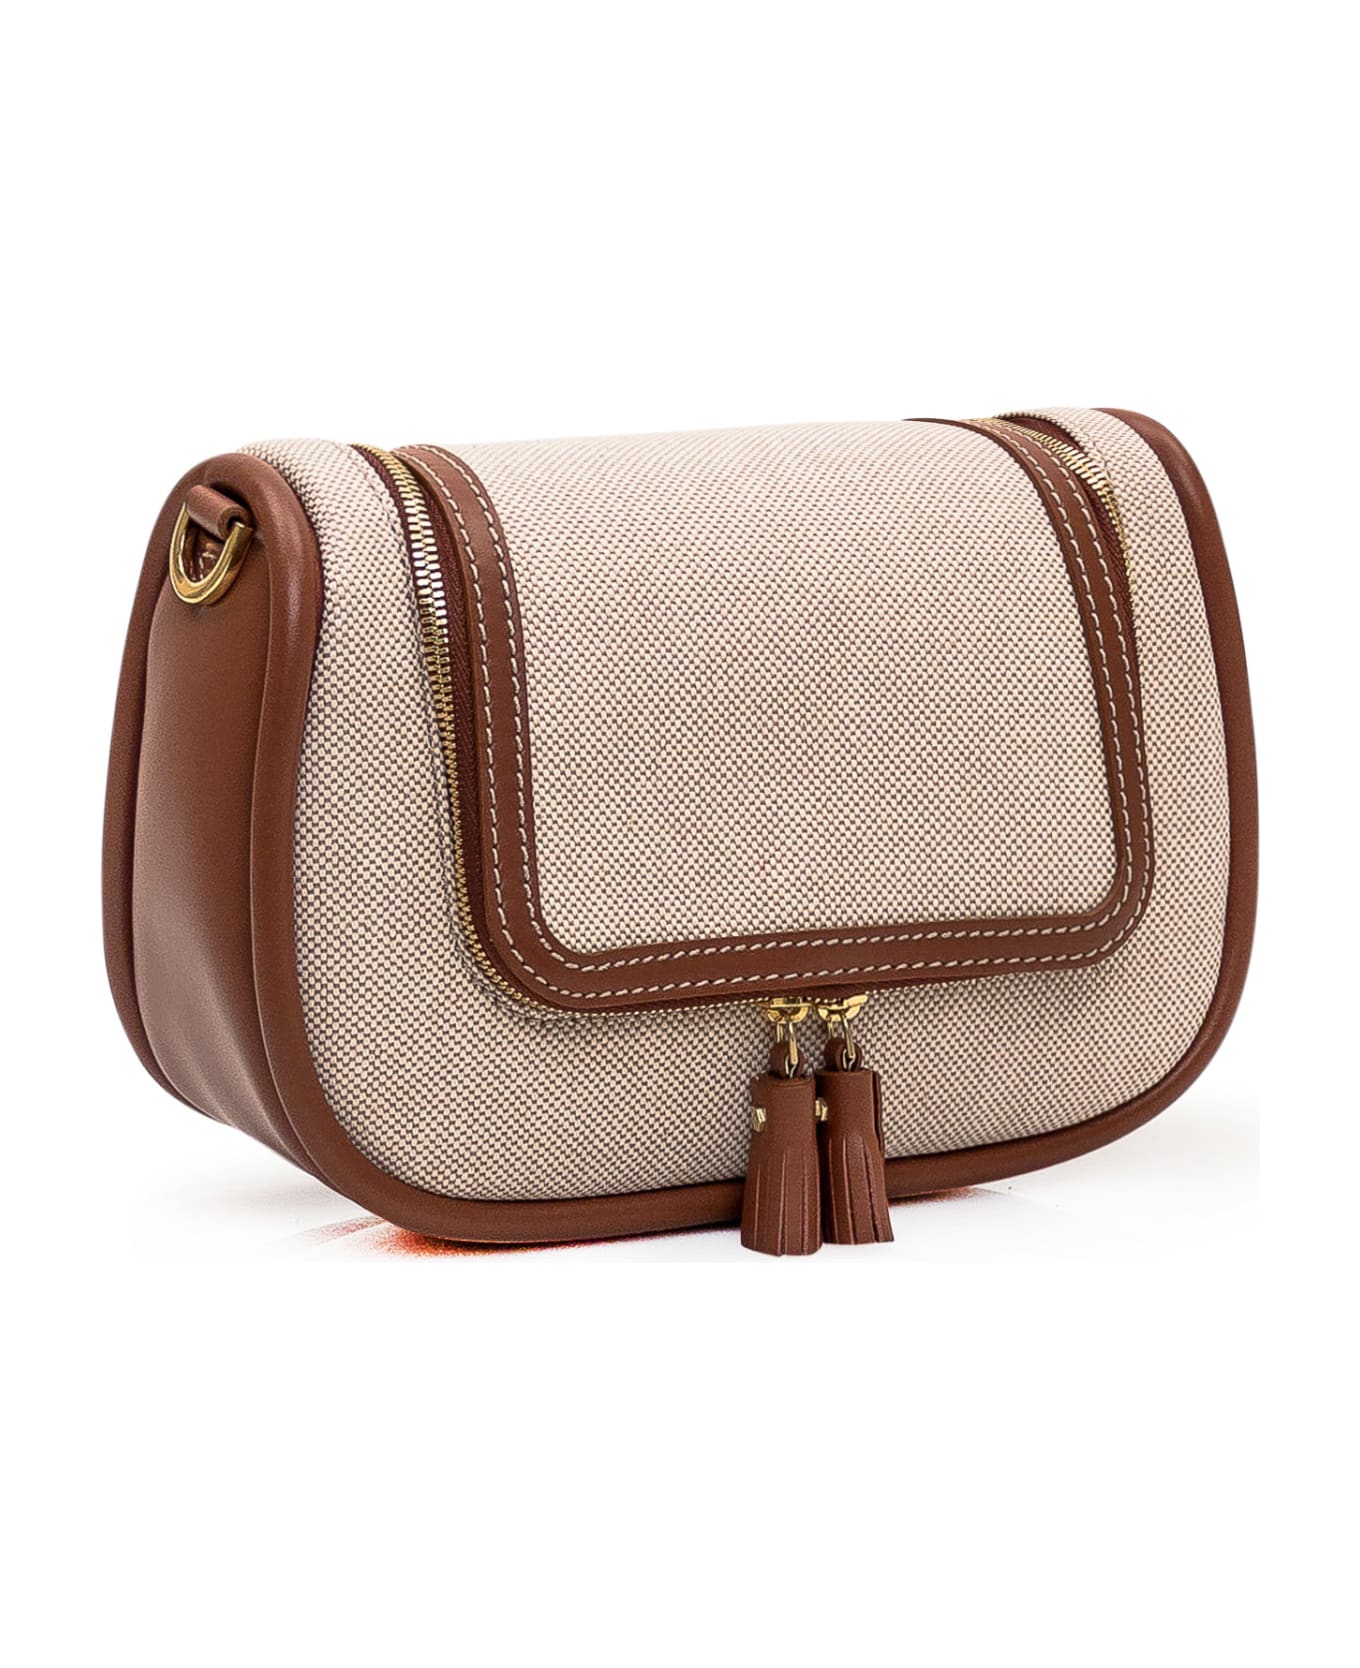 Anya Hindmarch Small Vere Soft Bag - NATURAL